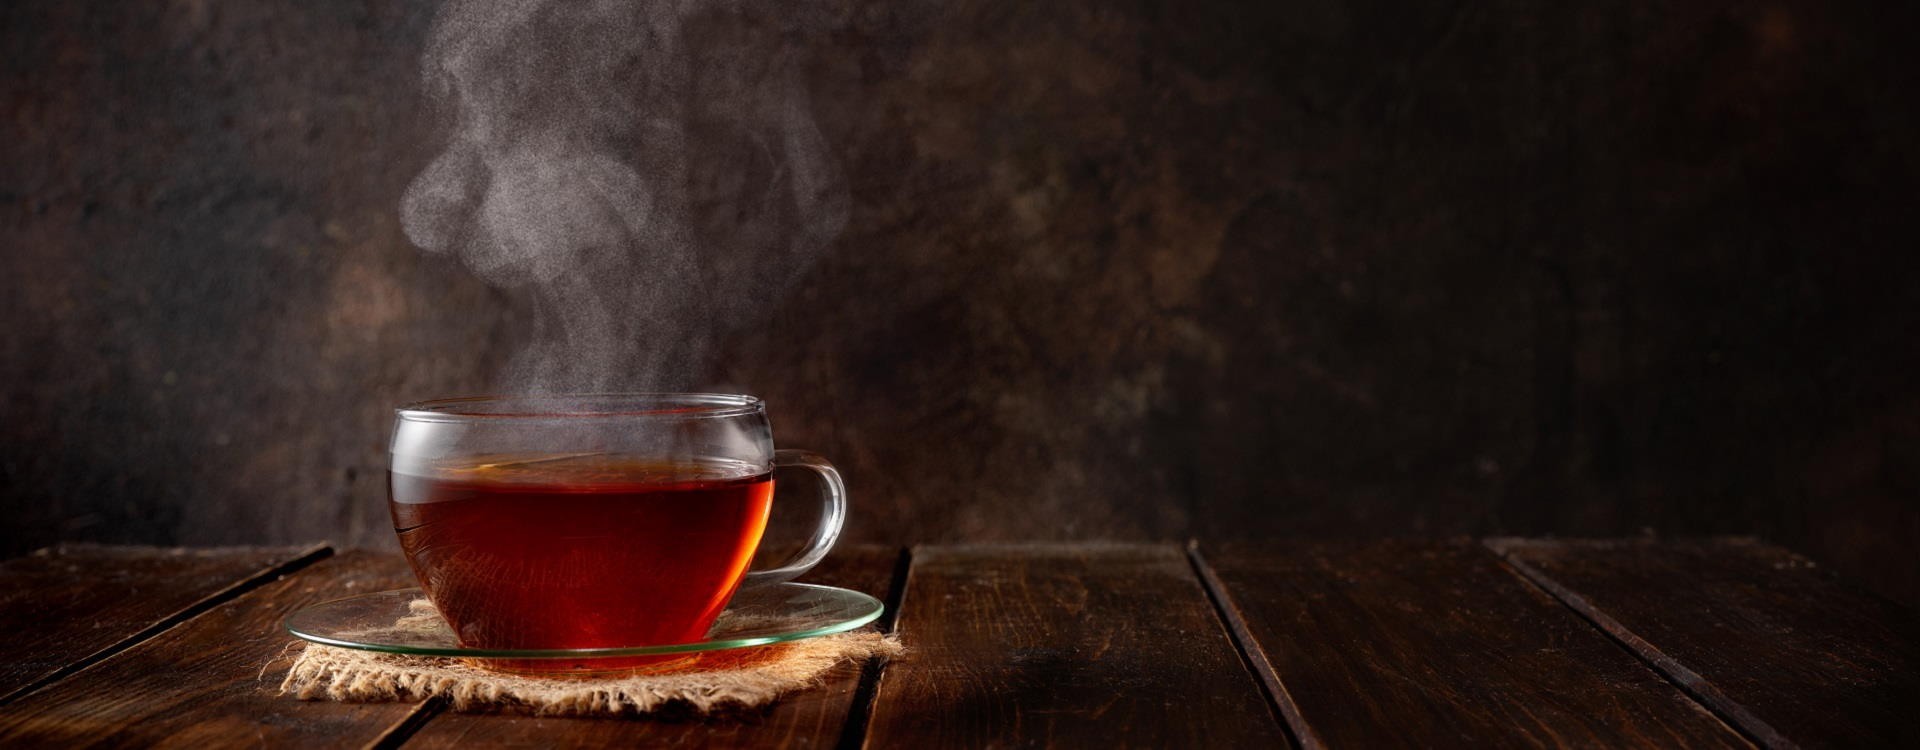 Chás para curar Gripe e Constipação - O Melhor Remédio Caseiro